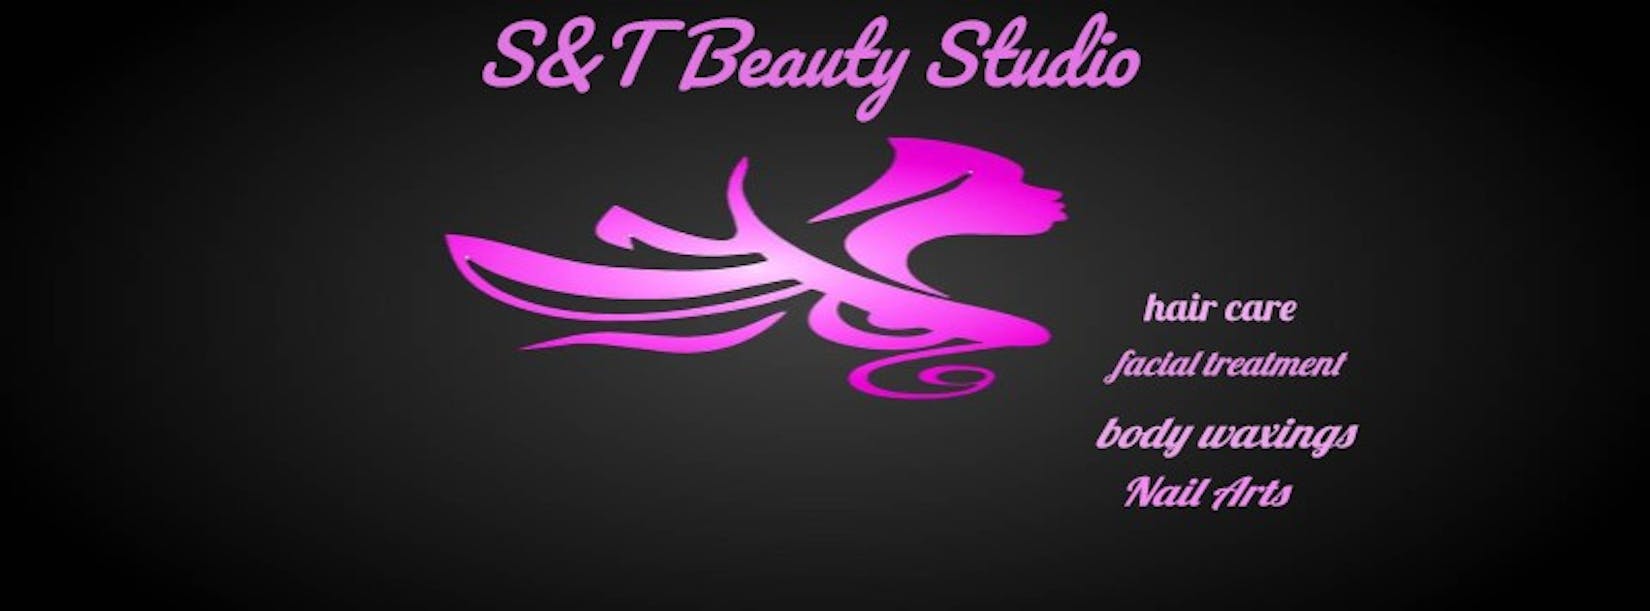 S&T Beauty Studio | Beauty